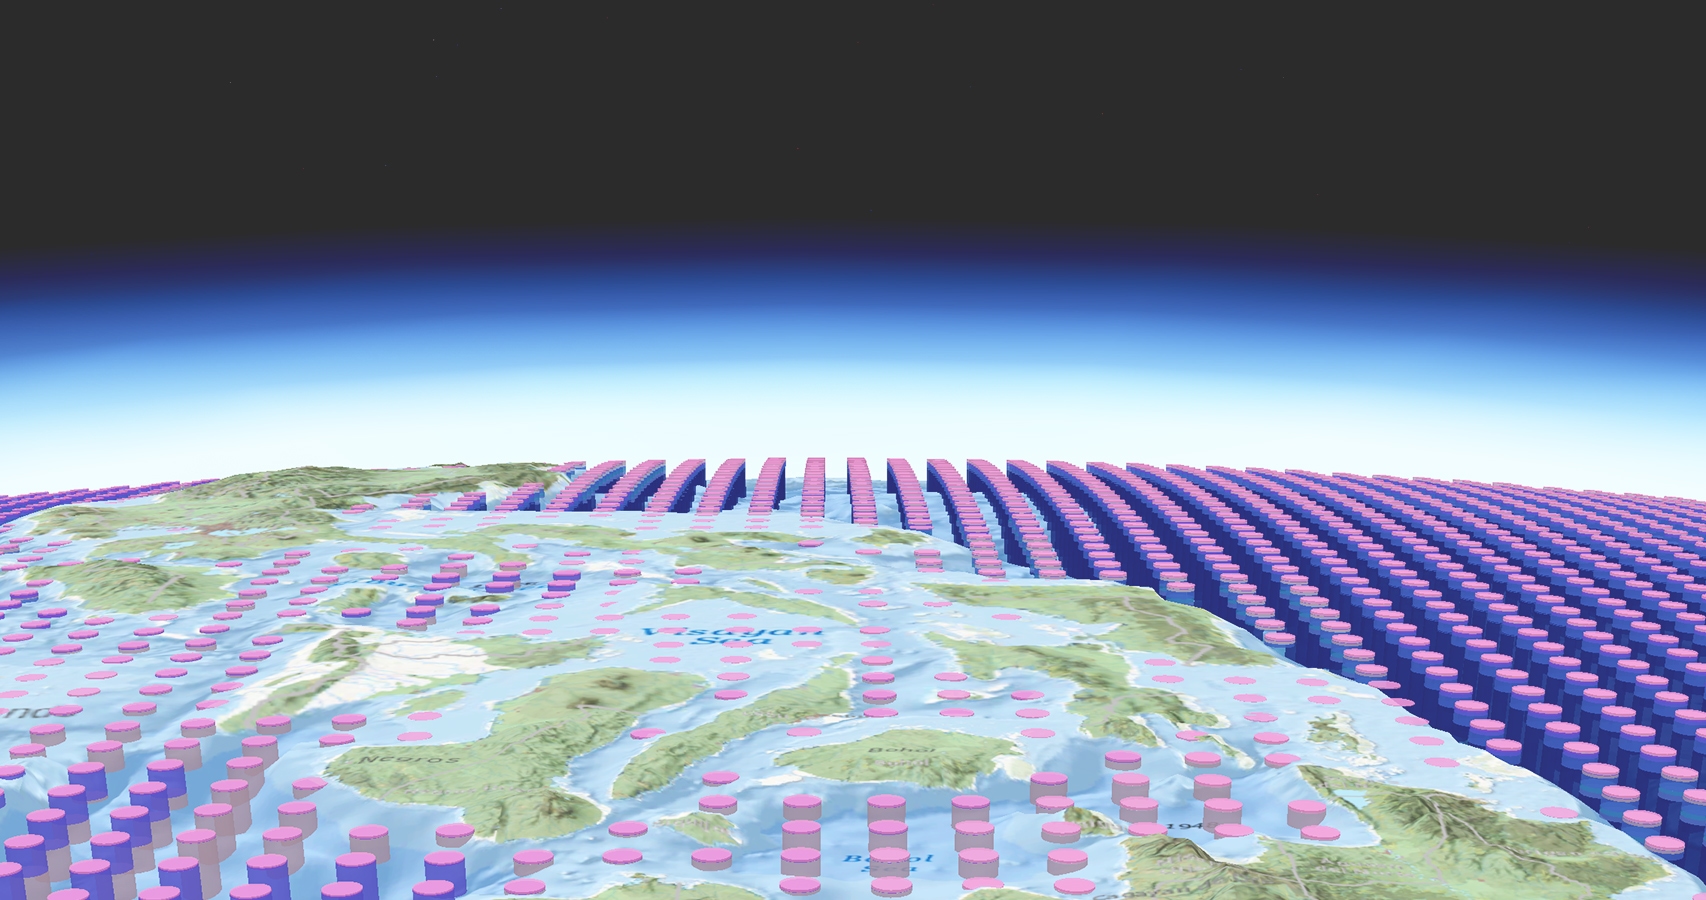 Gráfico con filas de cilindros de color rosa y morado dispuestos en hileras ordenadas sobre un mapa simplificado de curvas de nivel de la Tierra